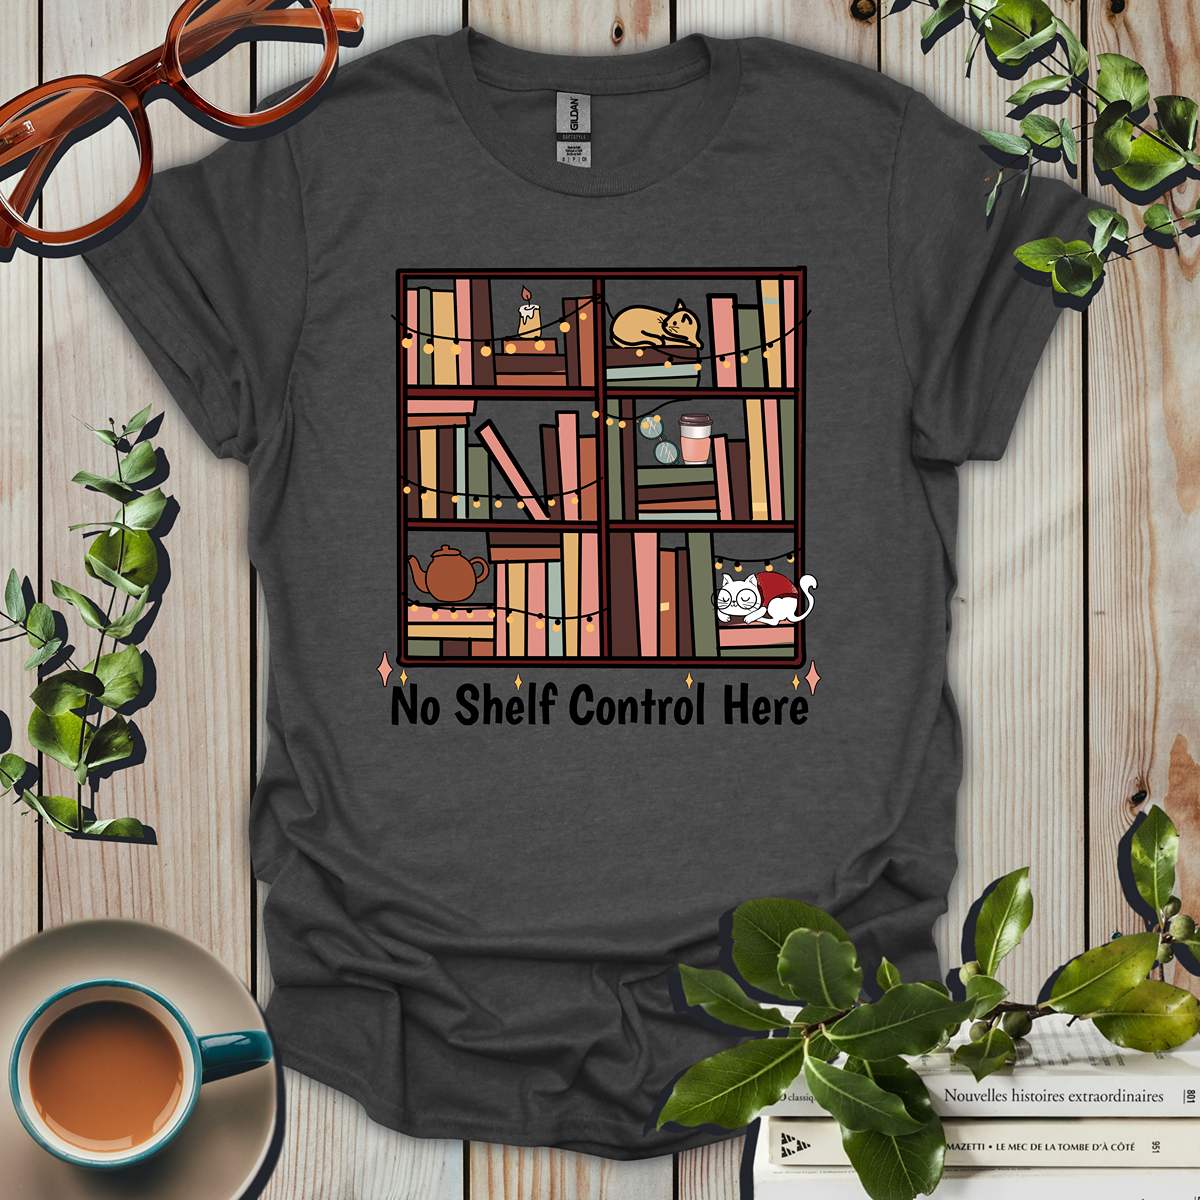 No Shelf Control Here Funny T-Shirt